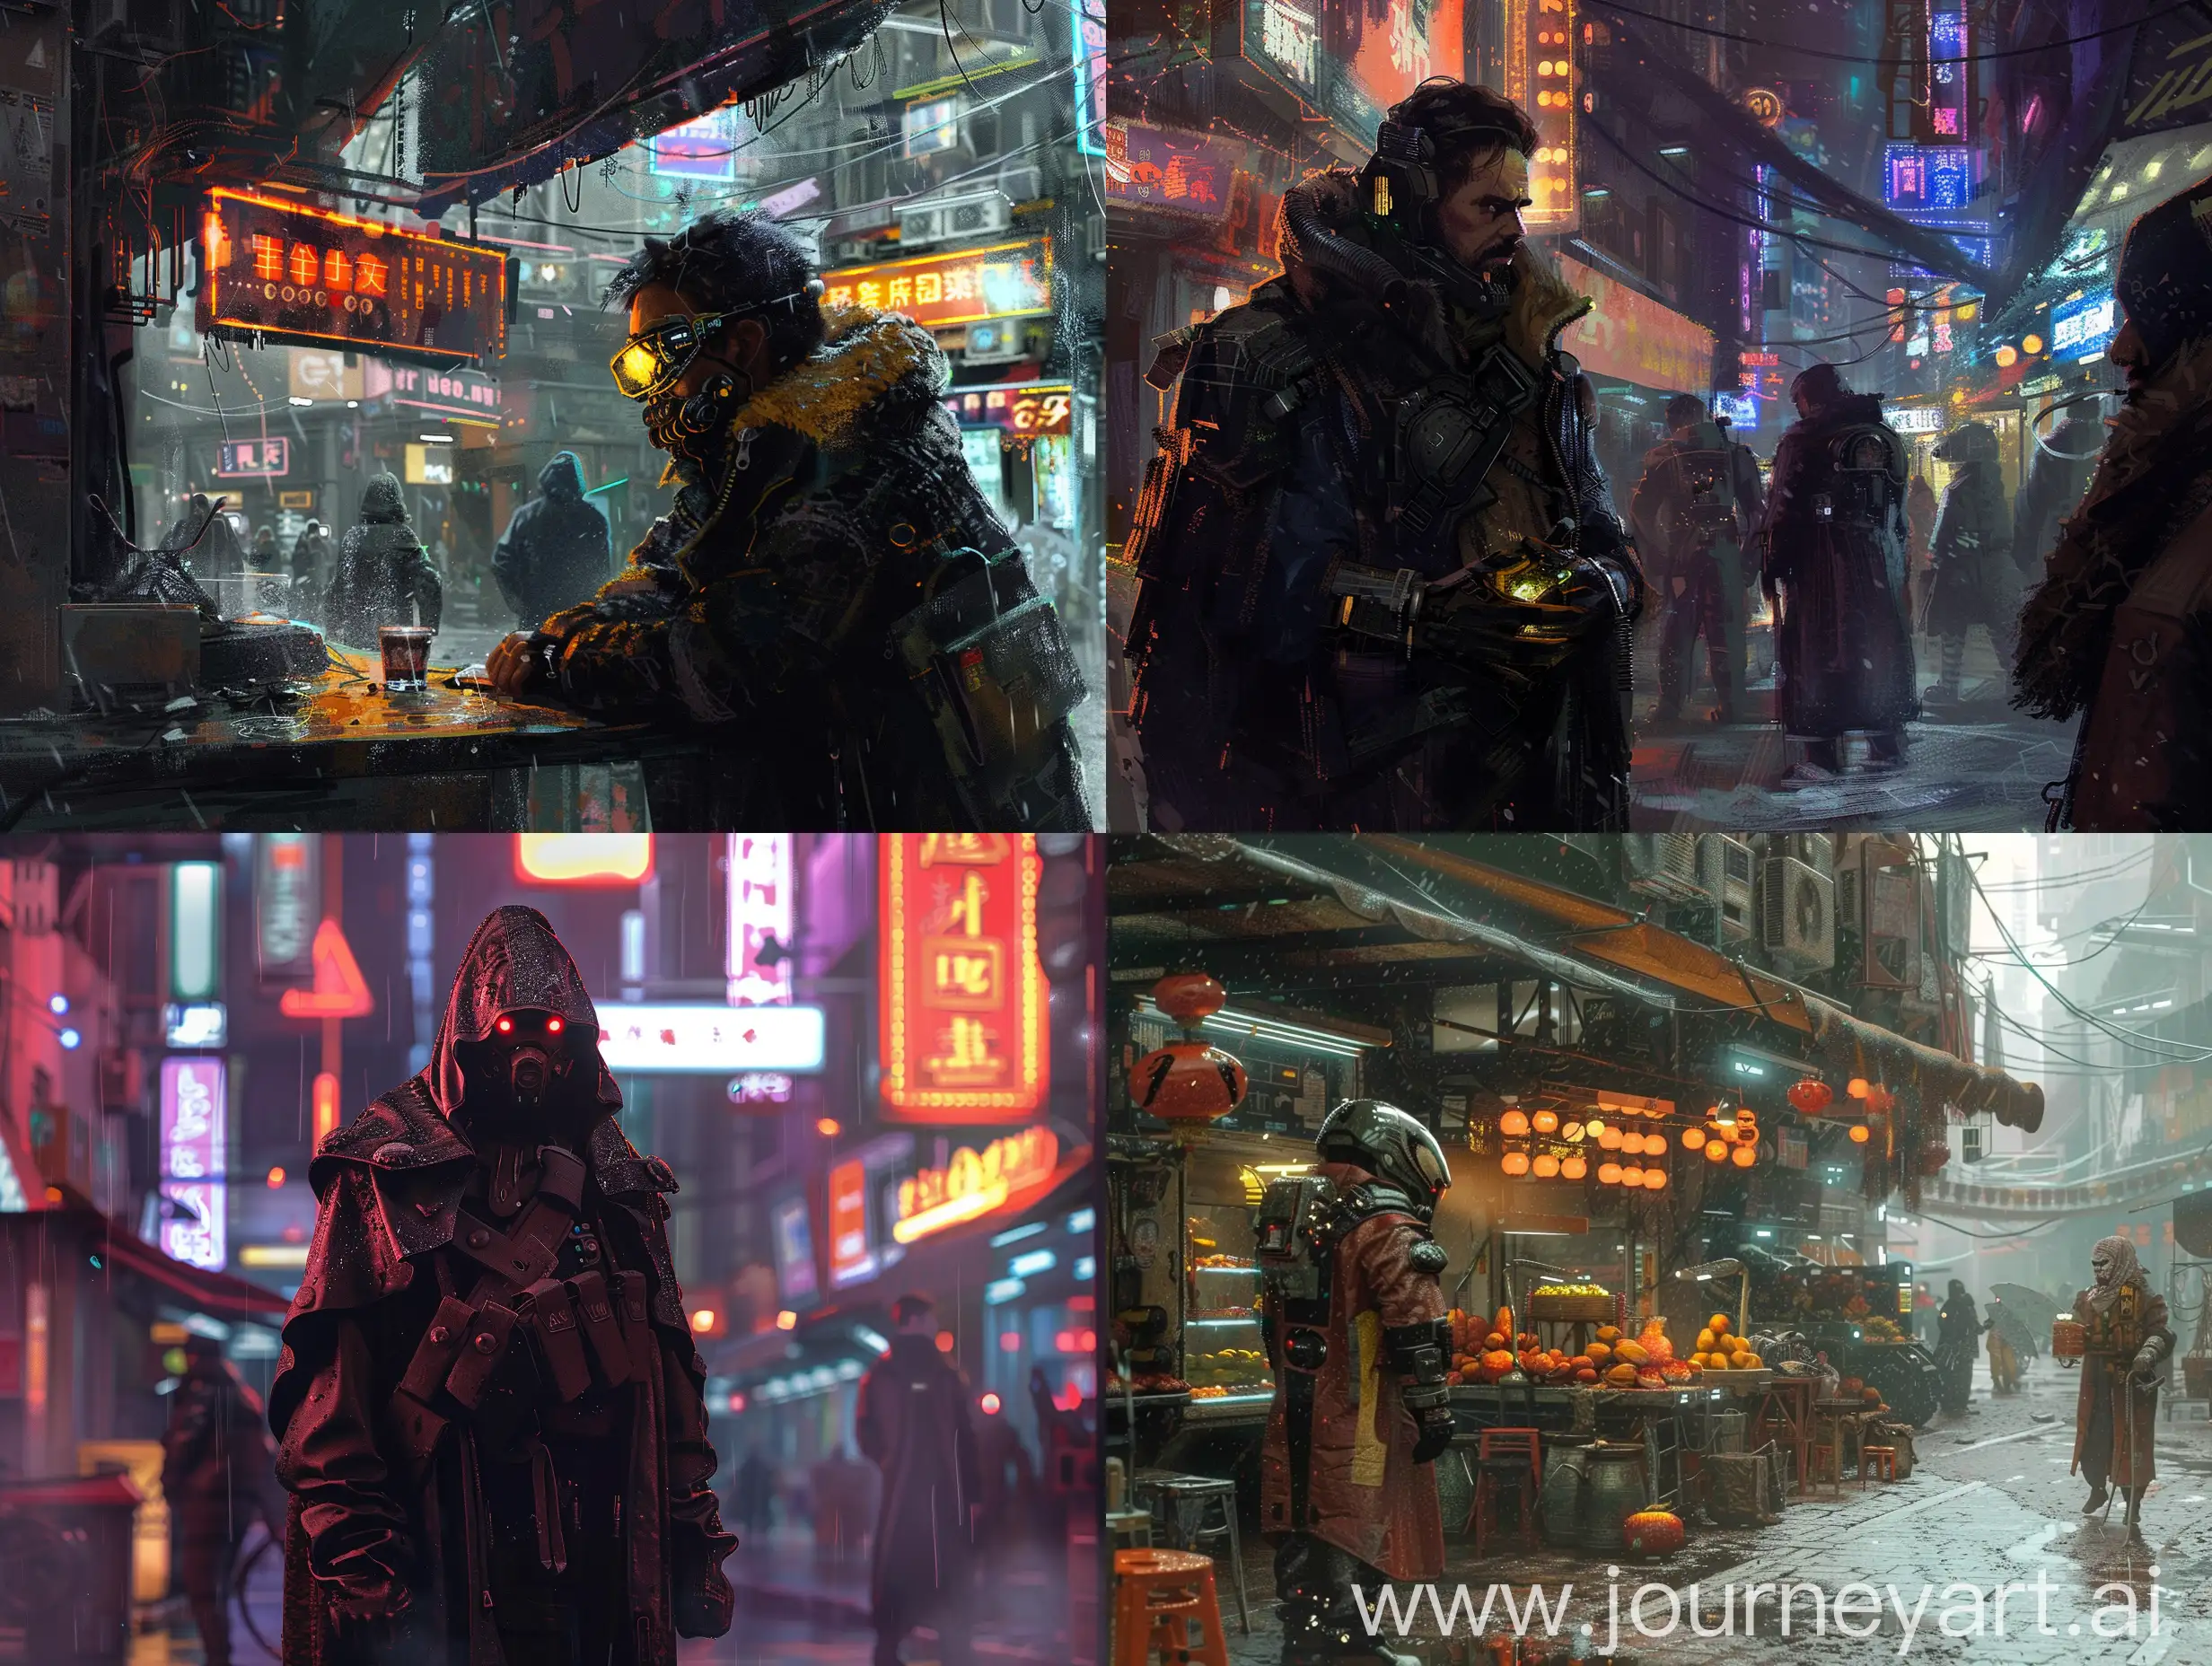 Futuristic-Cyberpunk-Merchant-in-District-NPC-Scene